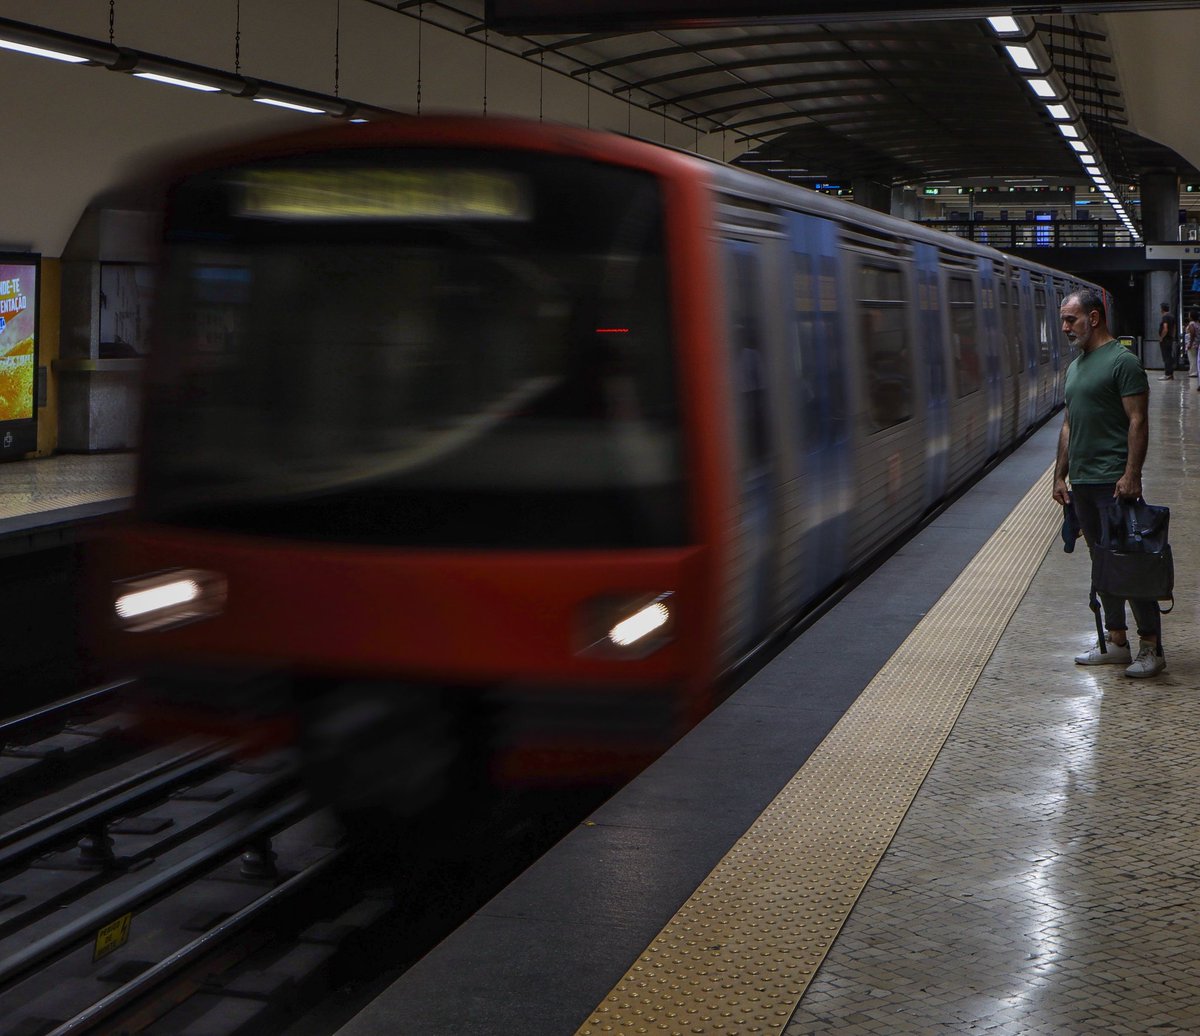 Metro Lisboa 🚇

#Metro #lisbon #portugal #lisboa #solotravel #visitportugal  #visitlisbon #lisbonportugal #travelphotography #visitlisboa #canon90D